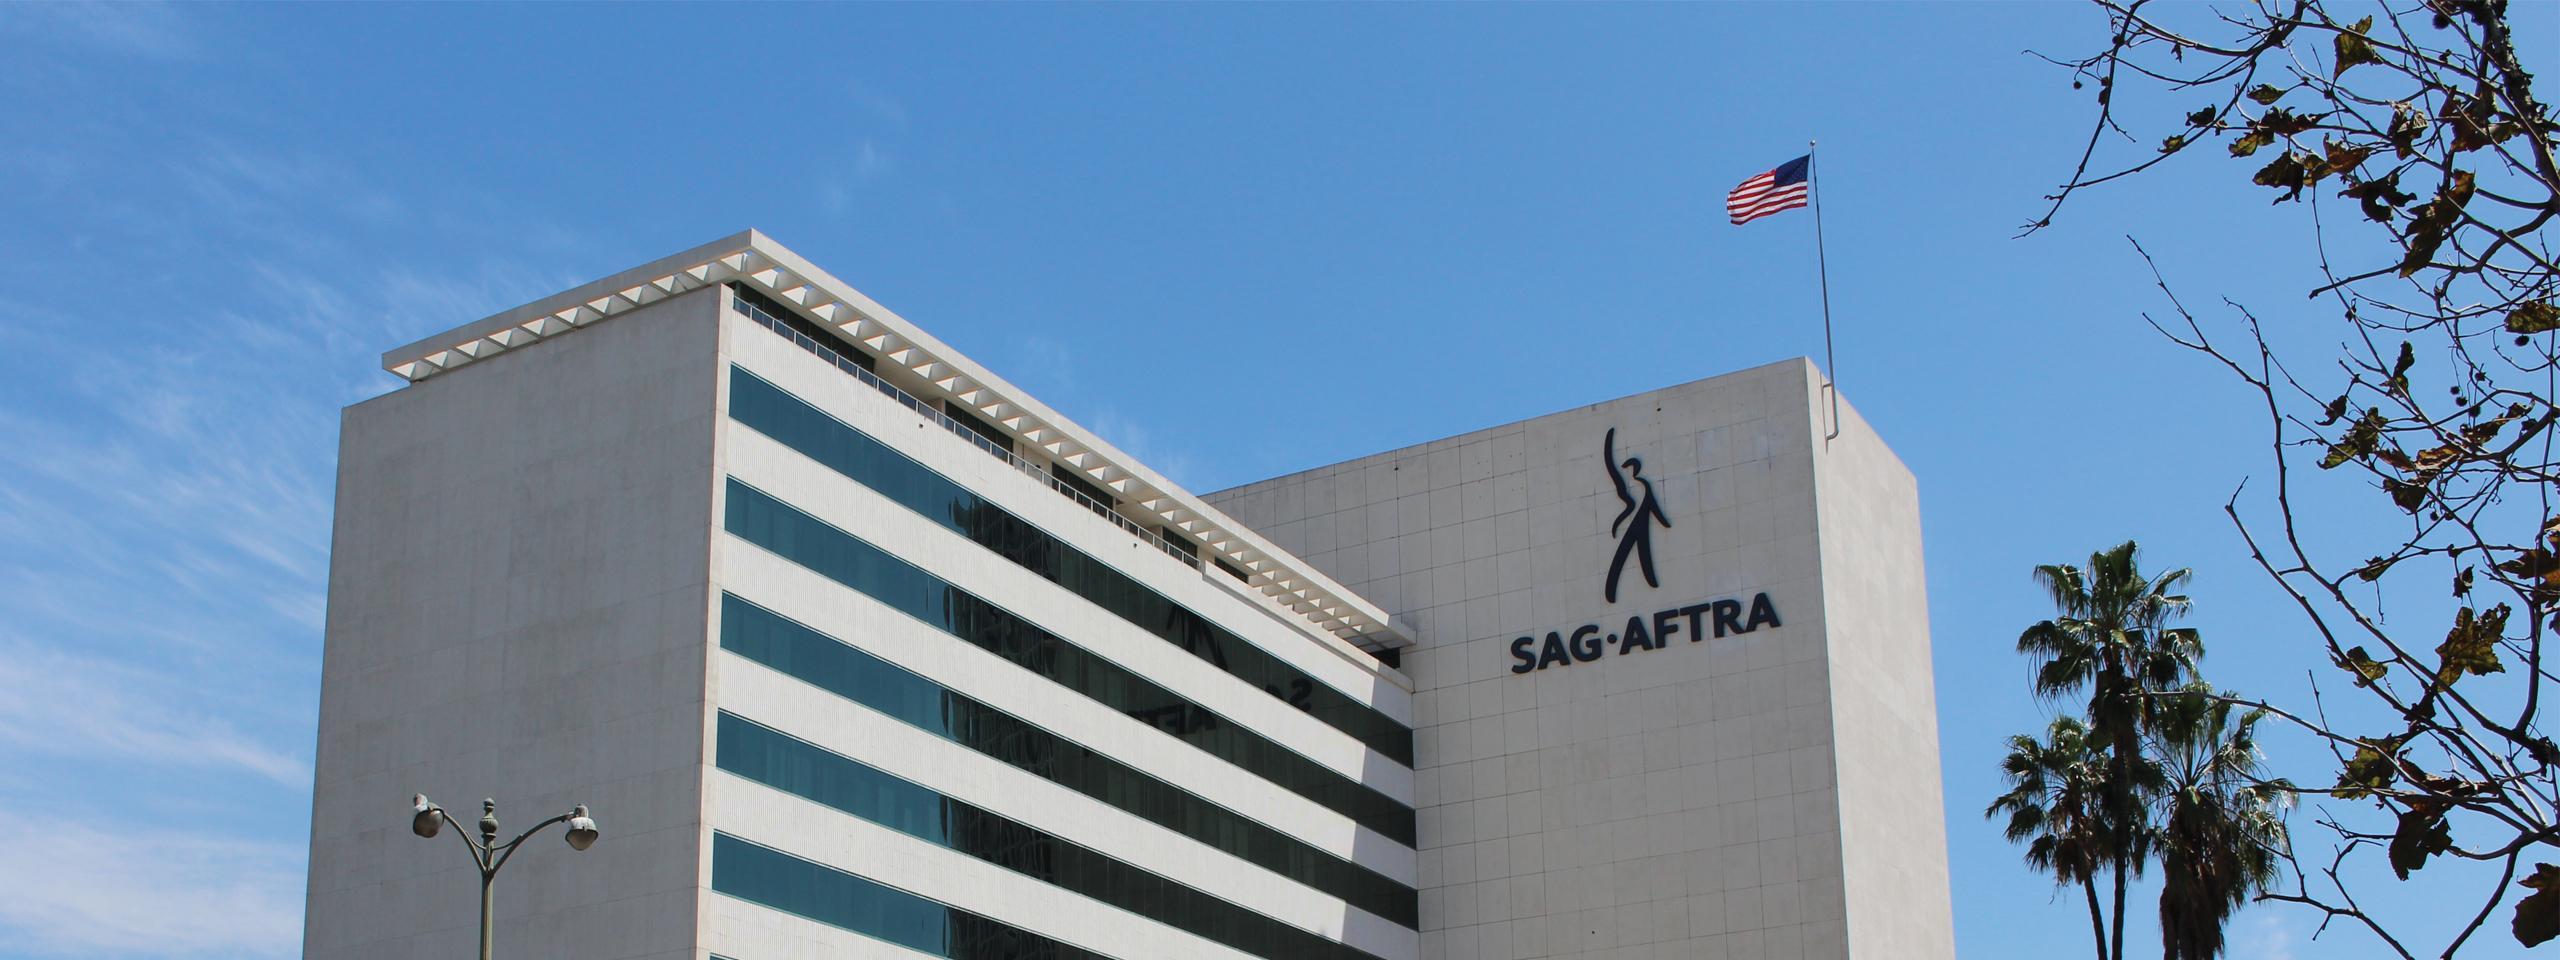 Sag Logo - SAG-AFTRA Brand Center | SAG-AFTRA